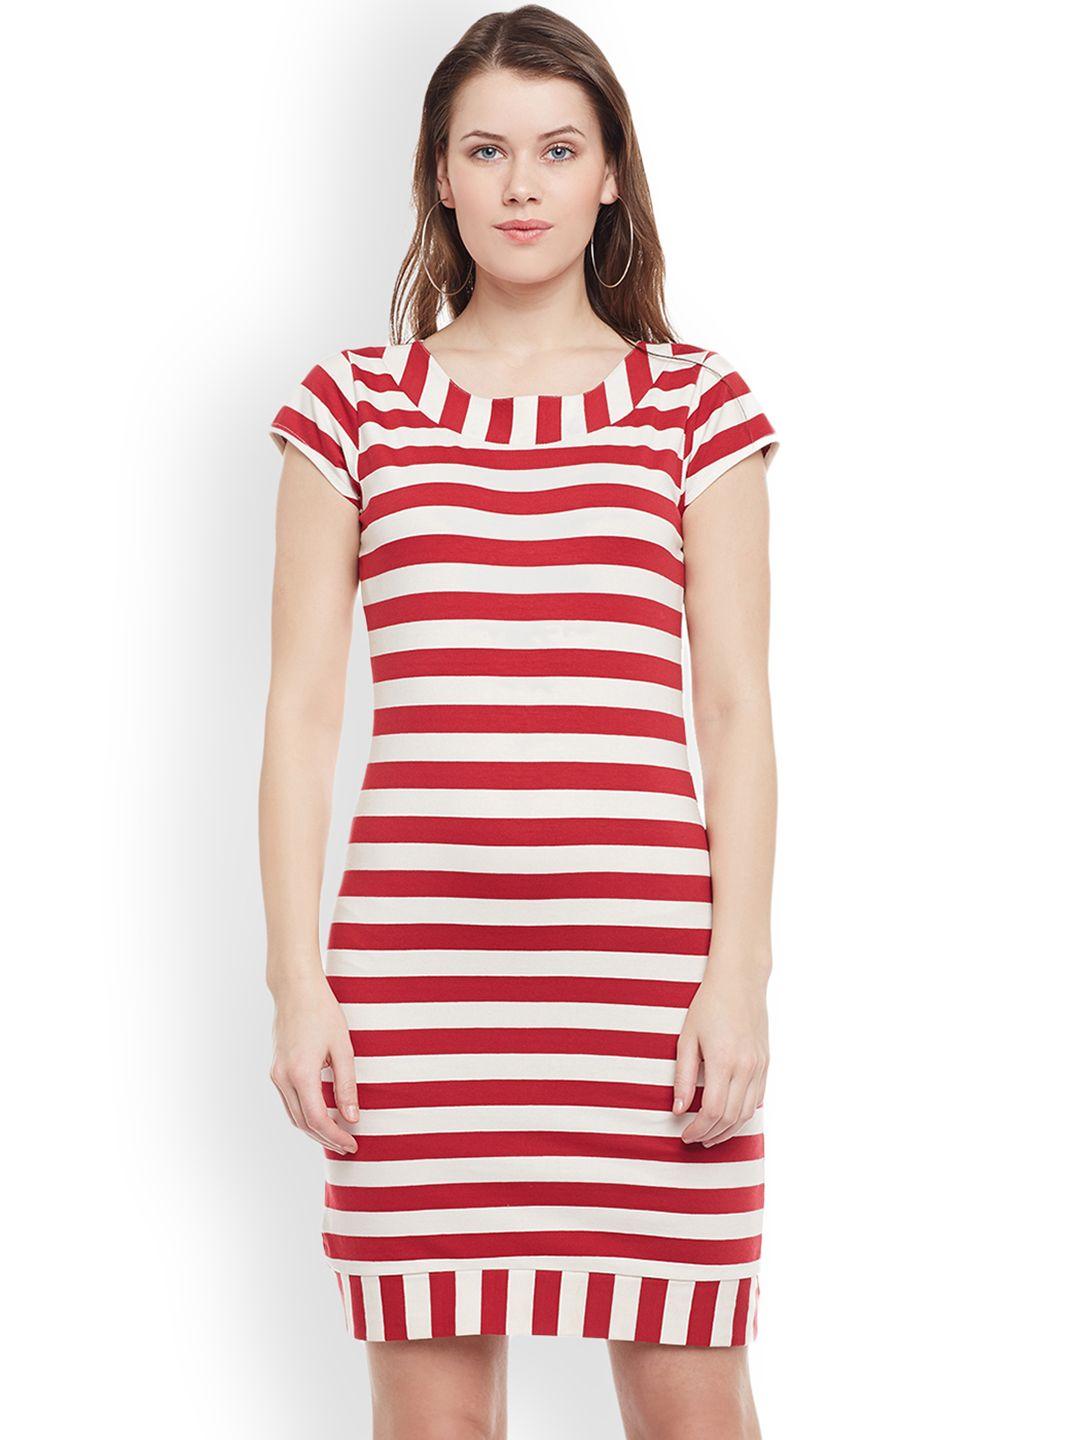 WISSTLER Women Red Striped Sheath Dress